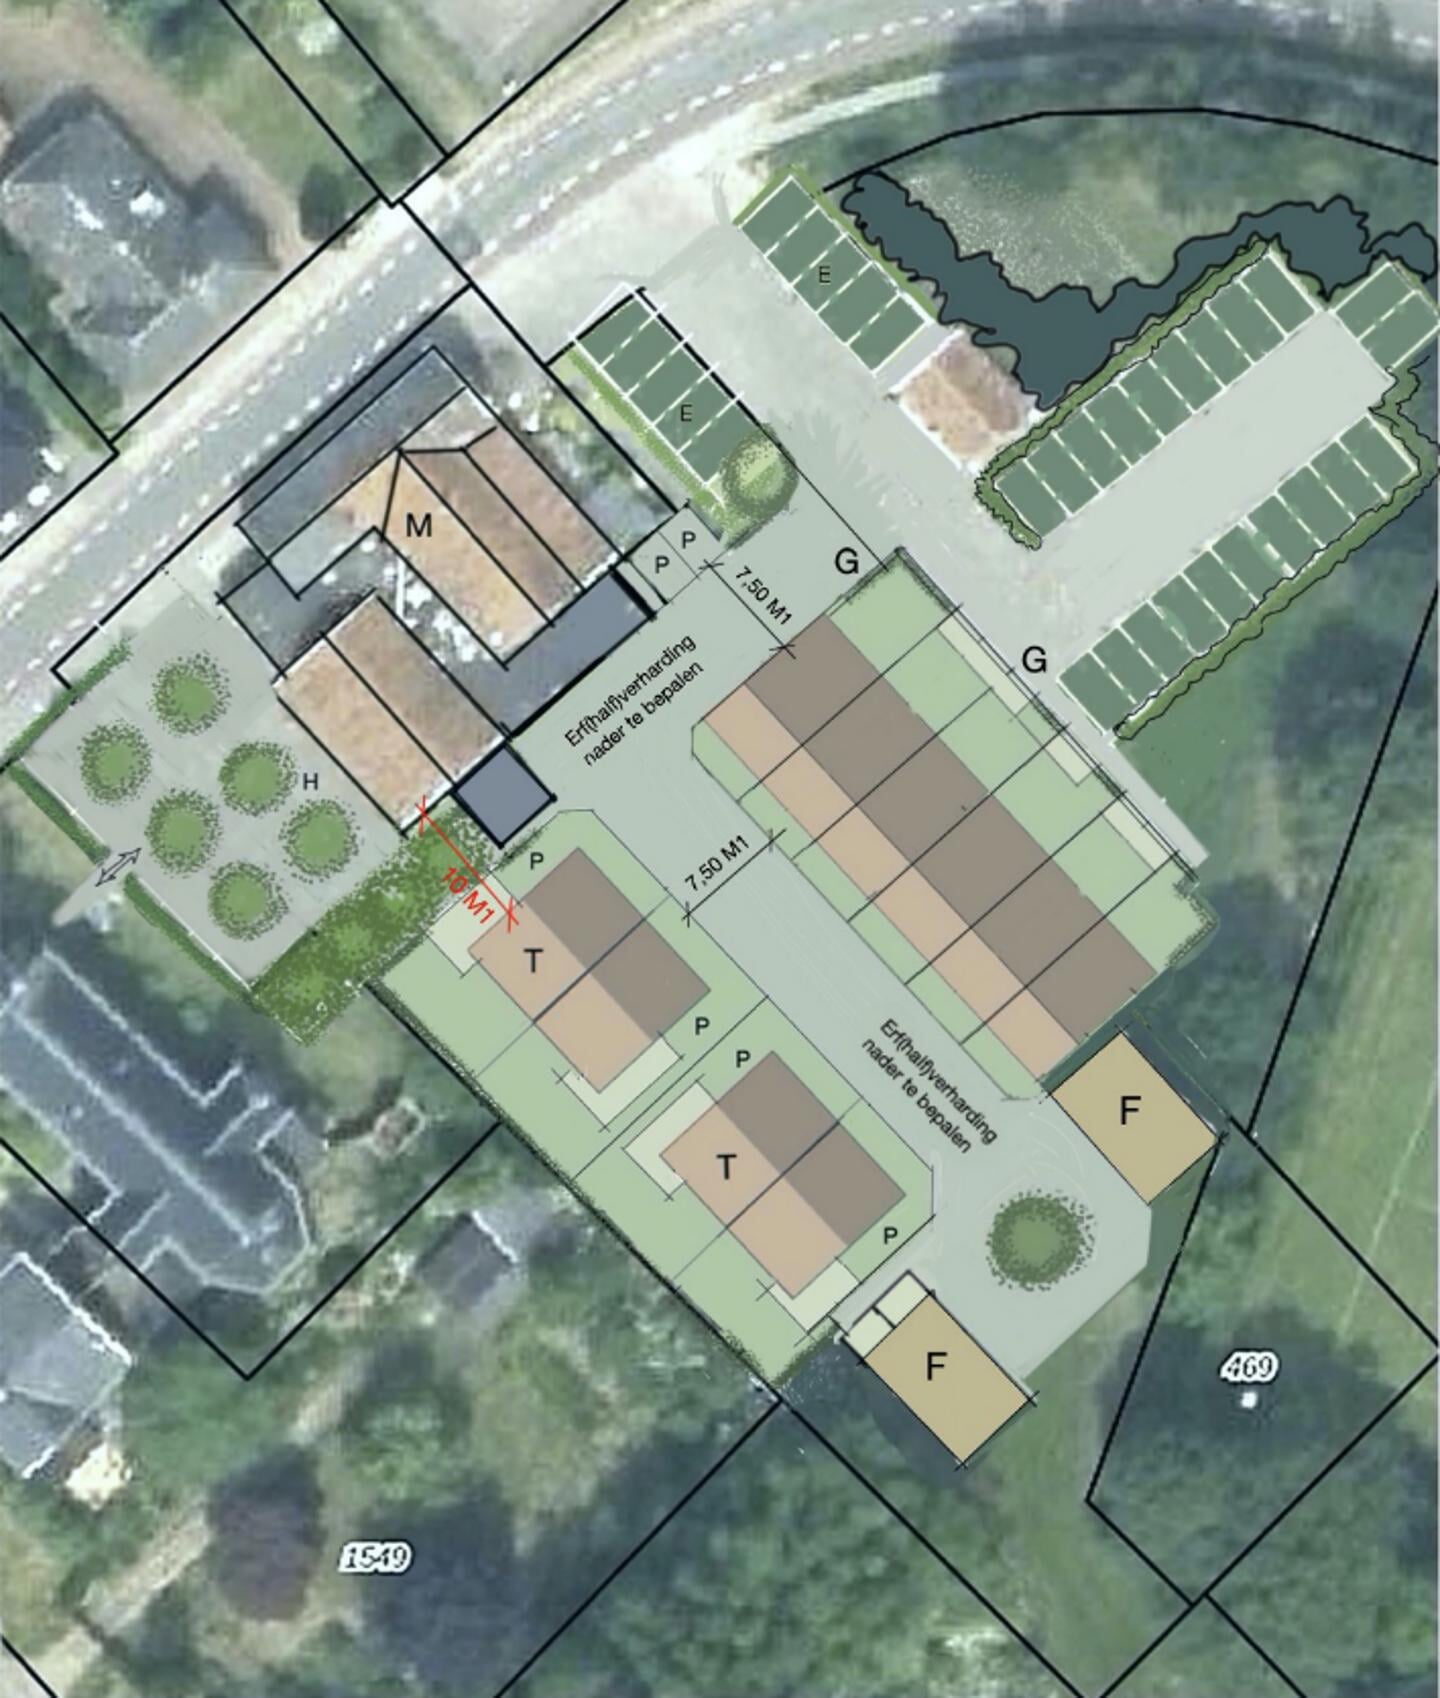 Plankaartje voor Kerkemeijer in Rekken; een deel van het terrein wordt getransformeerd voor woningbouw. Foto: PR